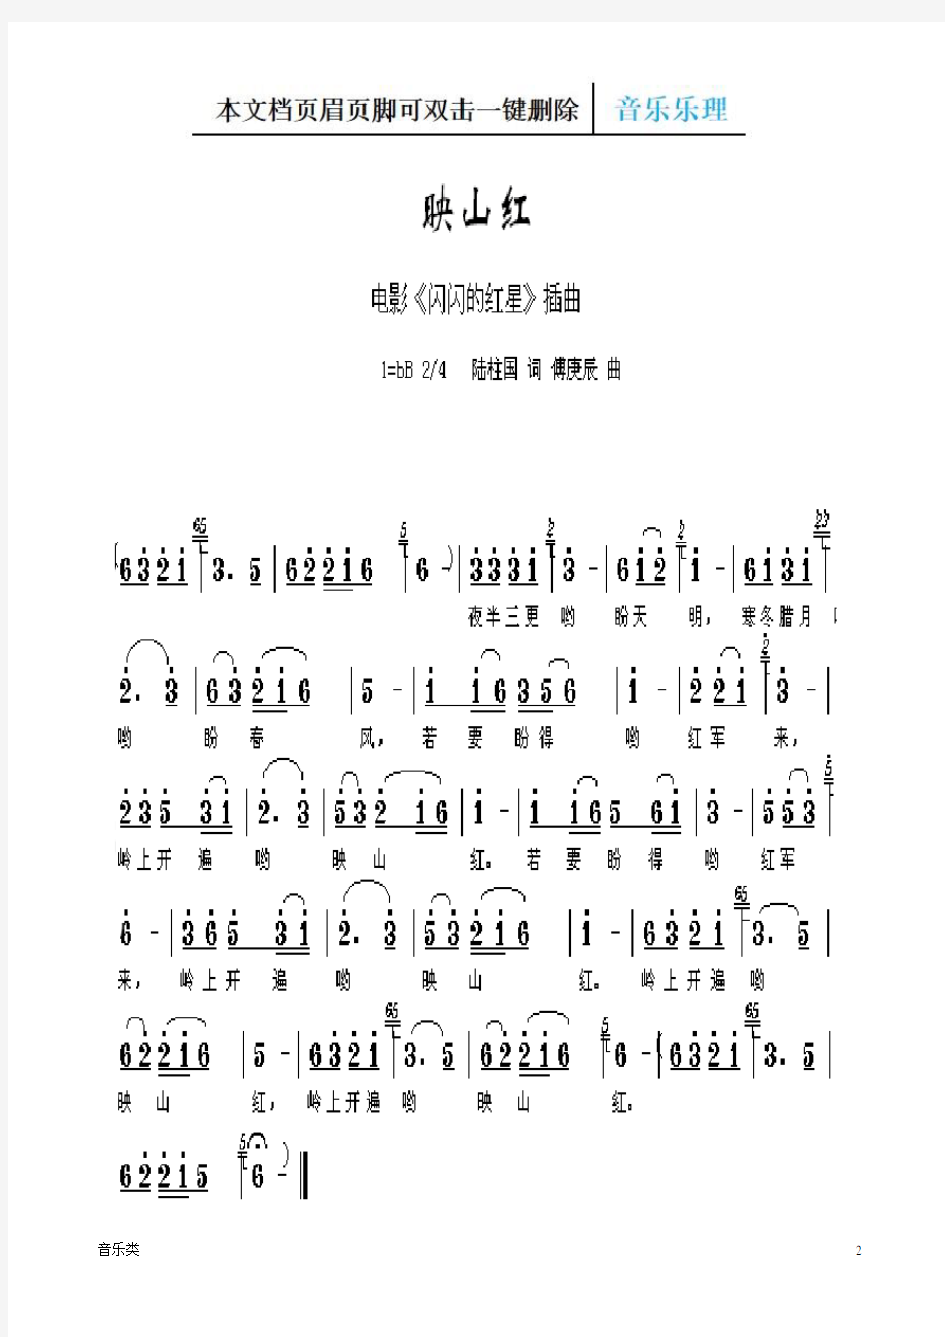 【音乐】经典红歌歌谱100首